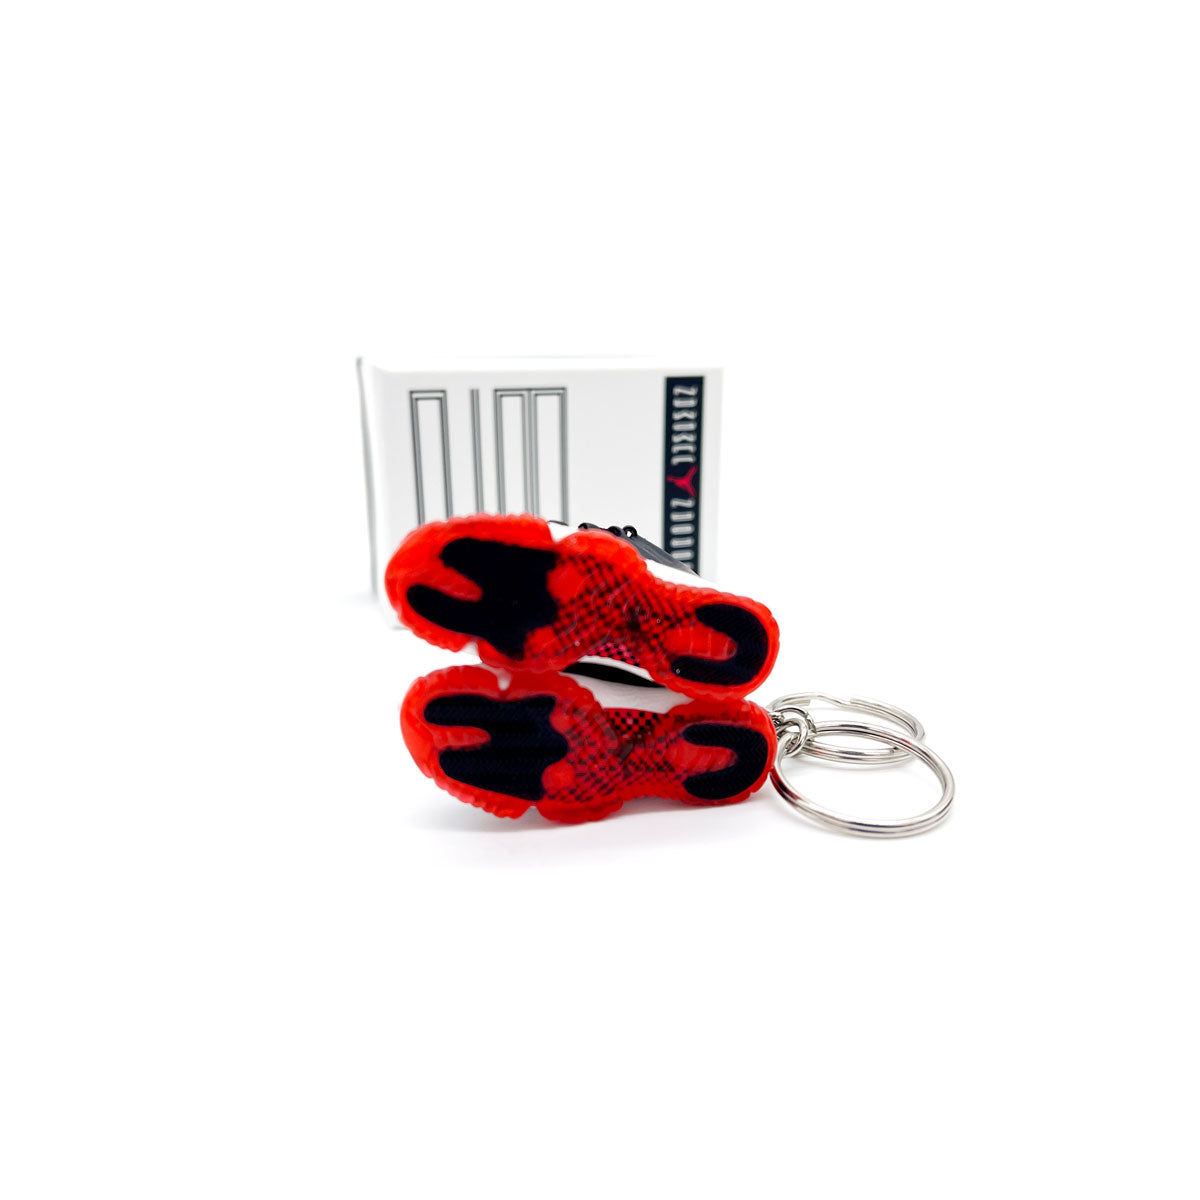 3D Sneaker Keychain- Air Jordan 11 Playoff 'Bred' Pair